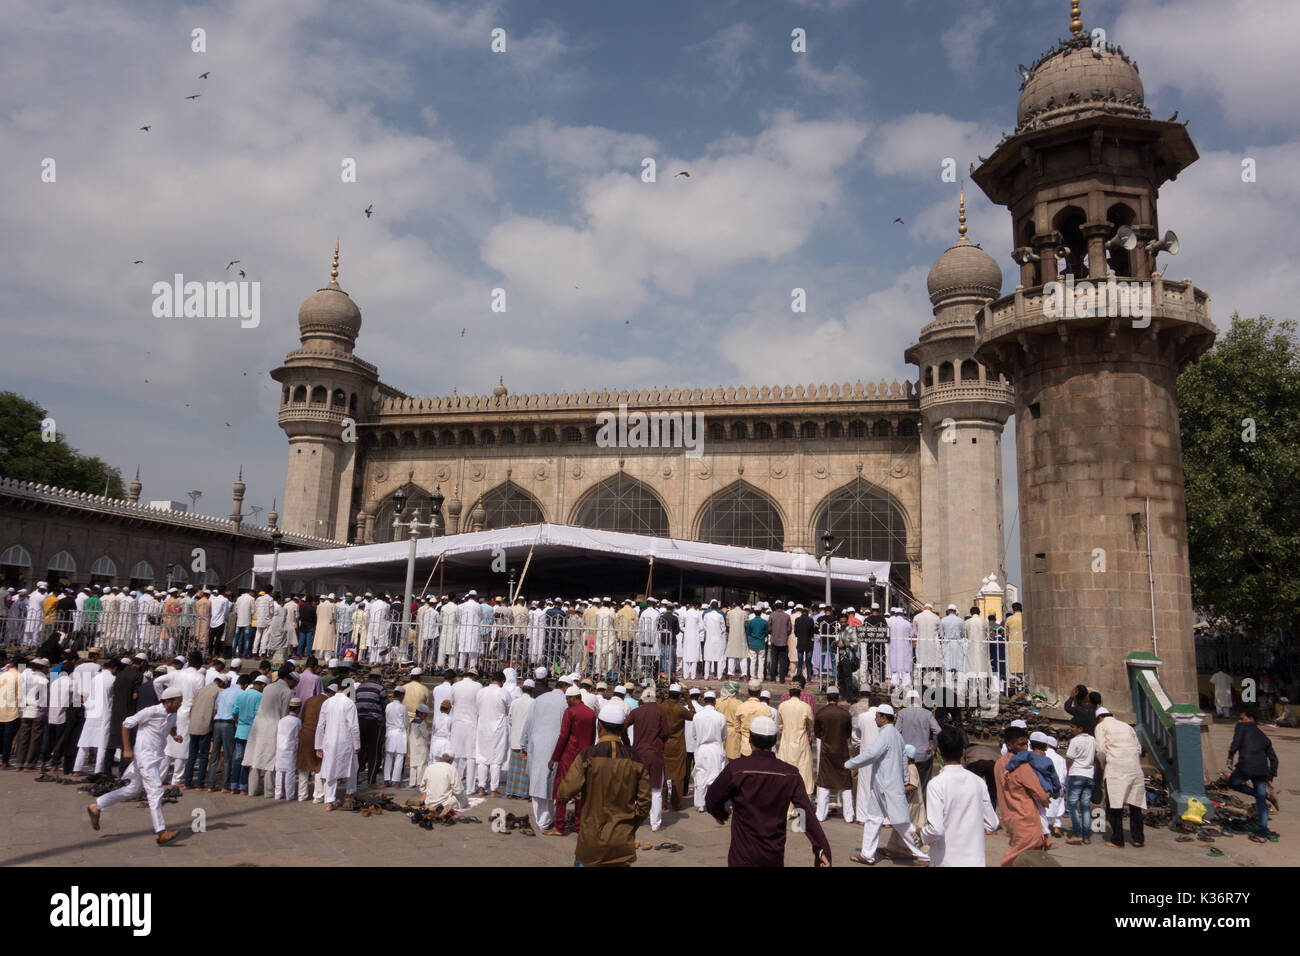 Hyderabad, Indien-02 September 2017. indischen Muslime bieten Gebete während des Eid al-Adha, hat keine bestimmte Zeitdauer an macca Masjid in Hyderabad, Indien. Sanjay borra/alamy Nachrichten Stockfoto